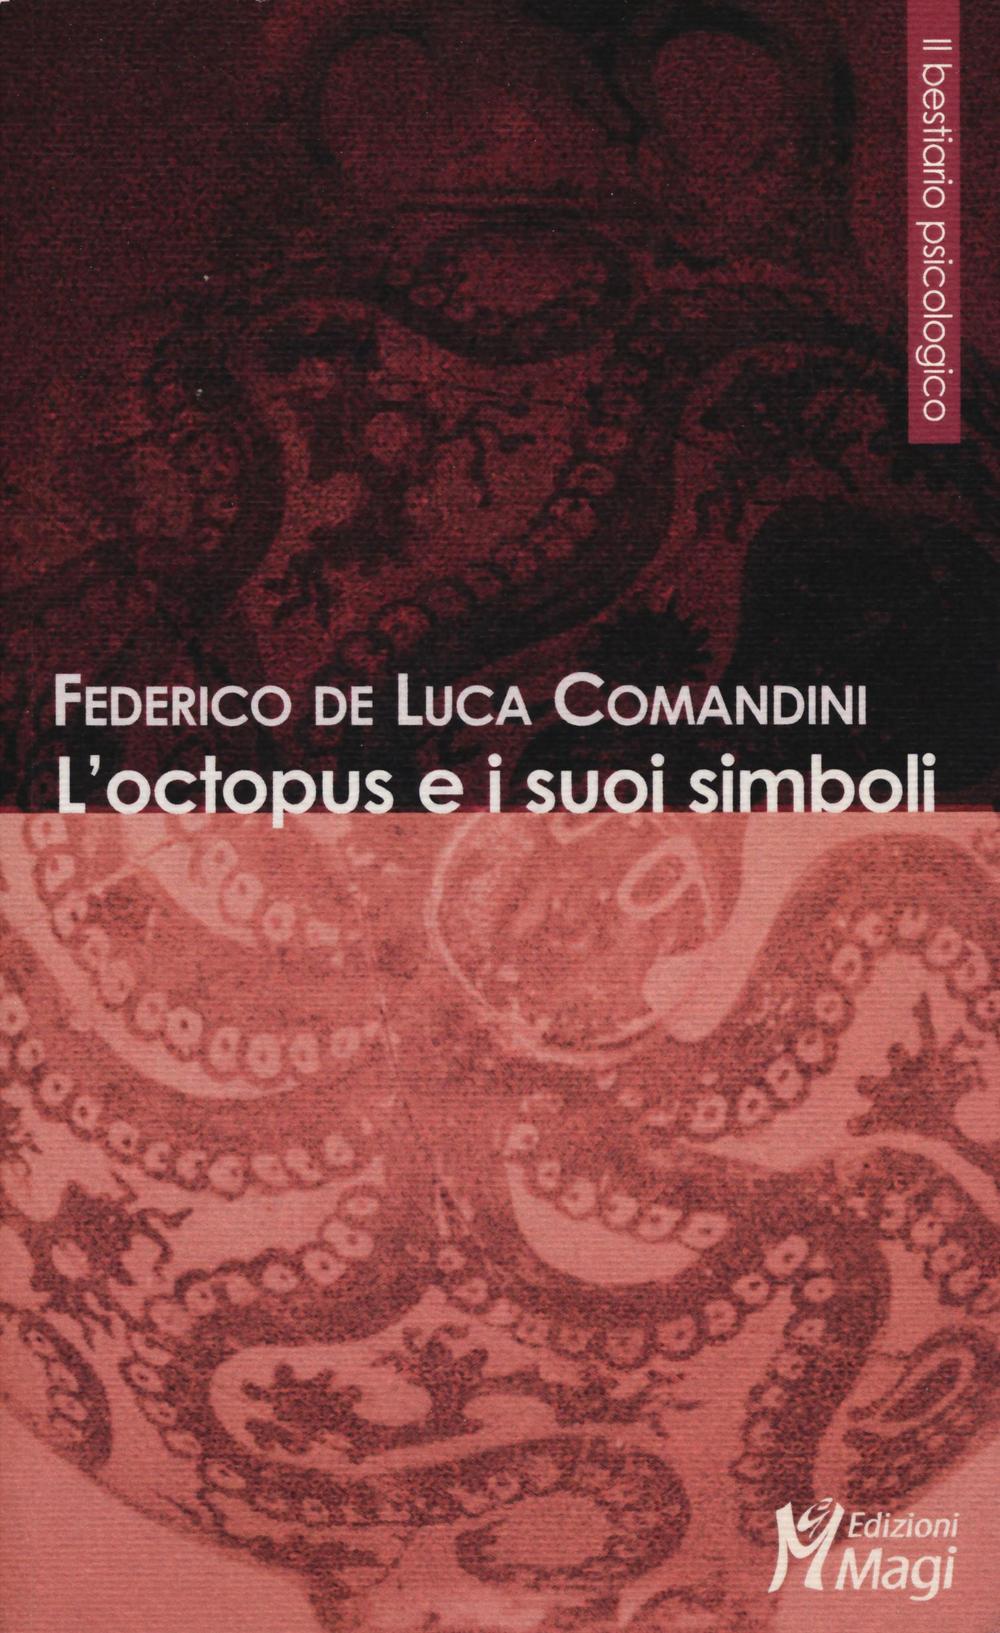 Libri De Luca Comandini Federico - L'Octopus E I Suoi Simboli NUOVO SIGILLATO, EDIZIONE DEL 20/10/2016 SUBITO DISPONIBILE